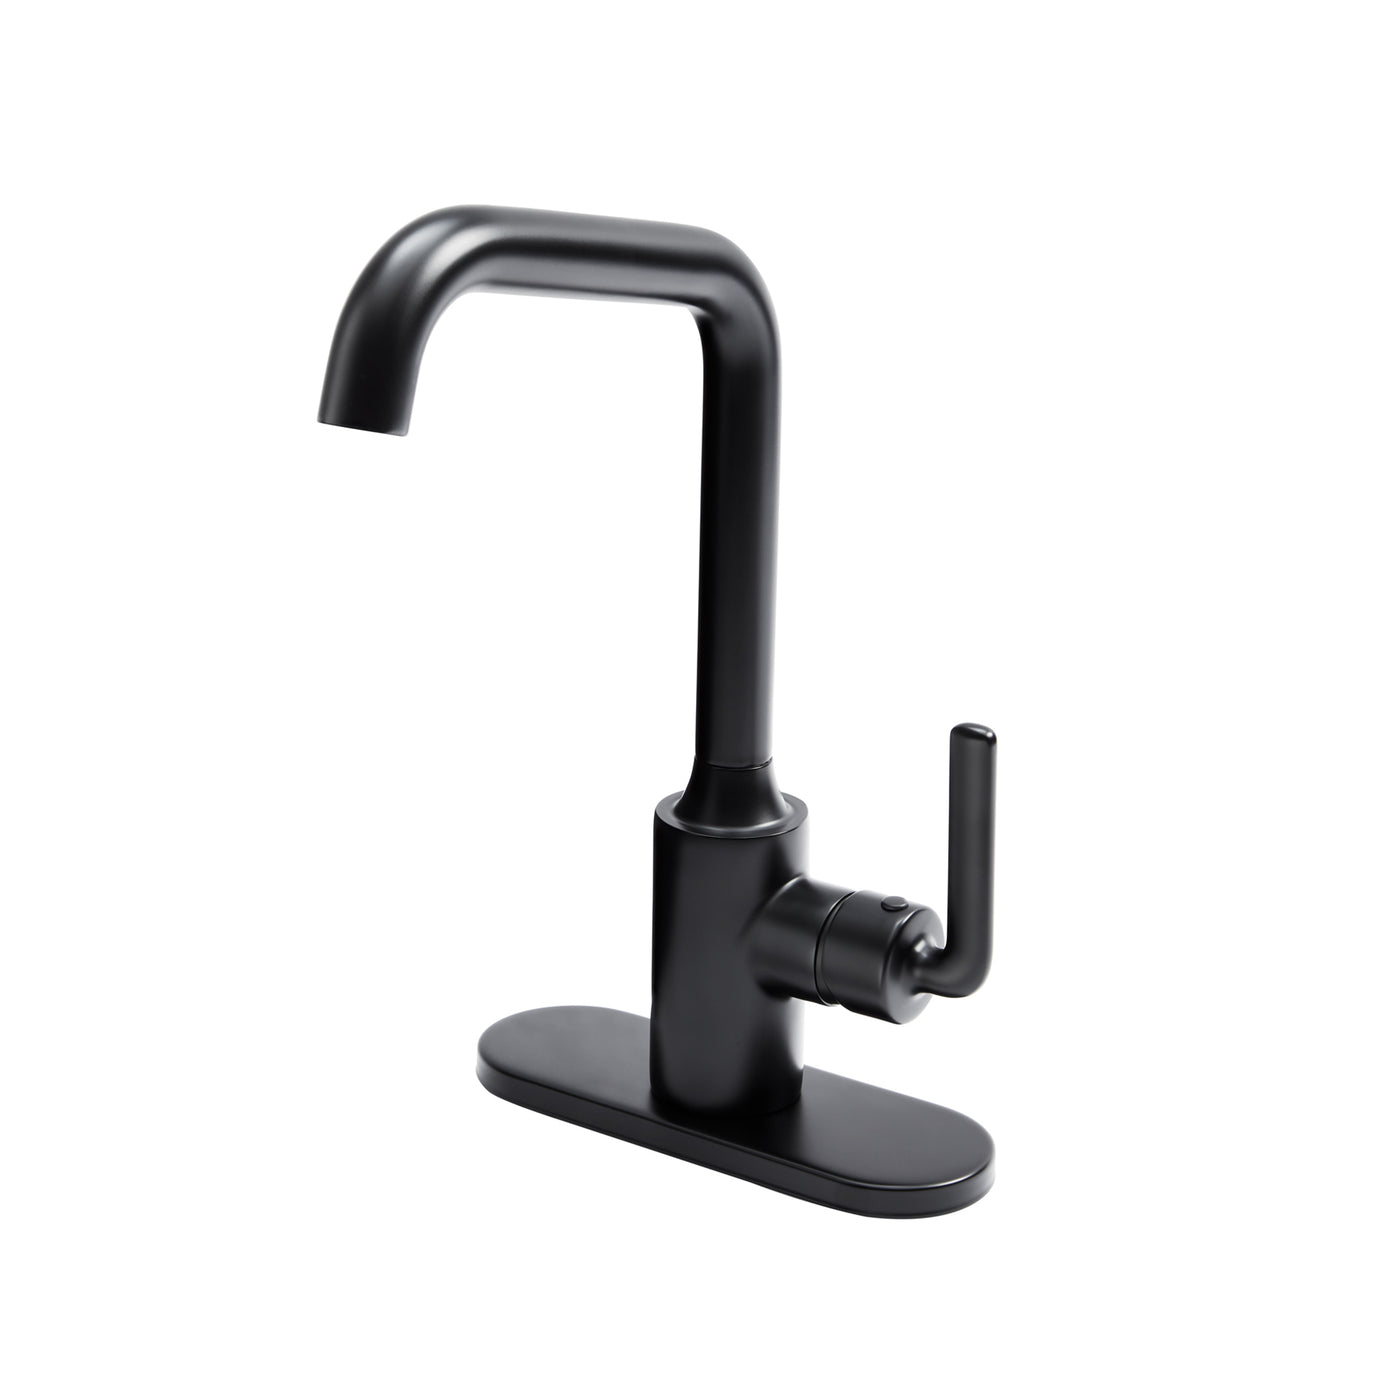 Solus Single Handle Lavatory Faucet with Deck Matte Black